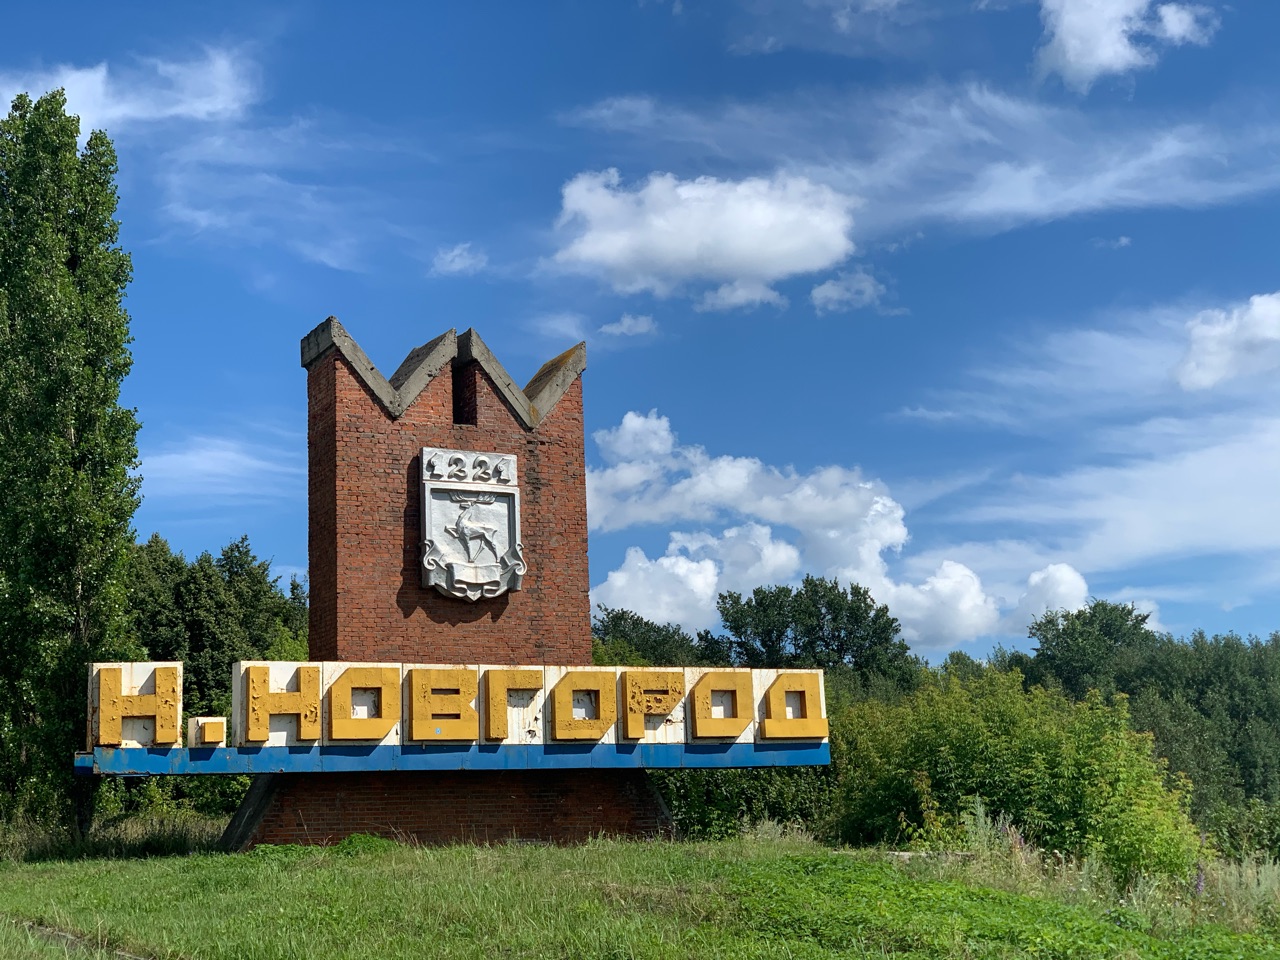 Нижний Новгород вошел в тройку городов по редевелопменту исторических территорий - фото 1